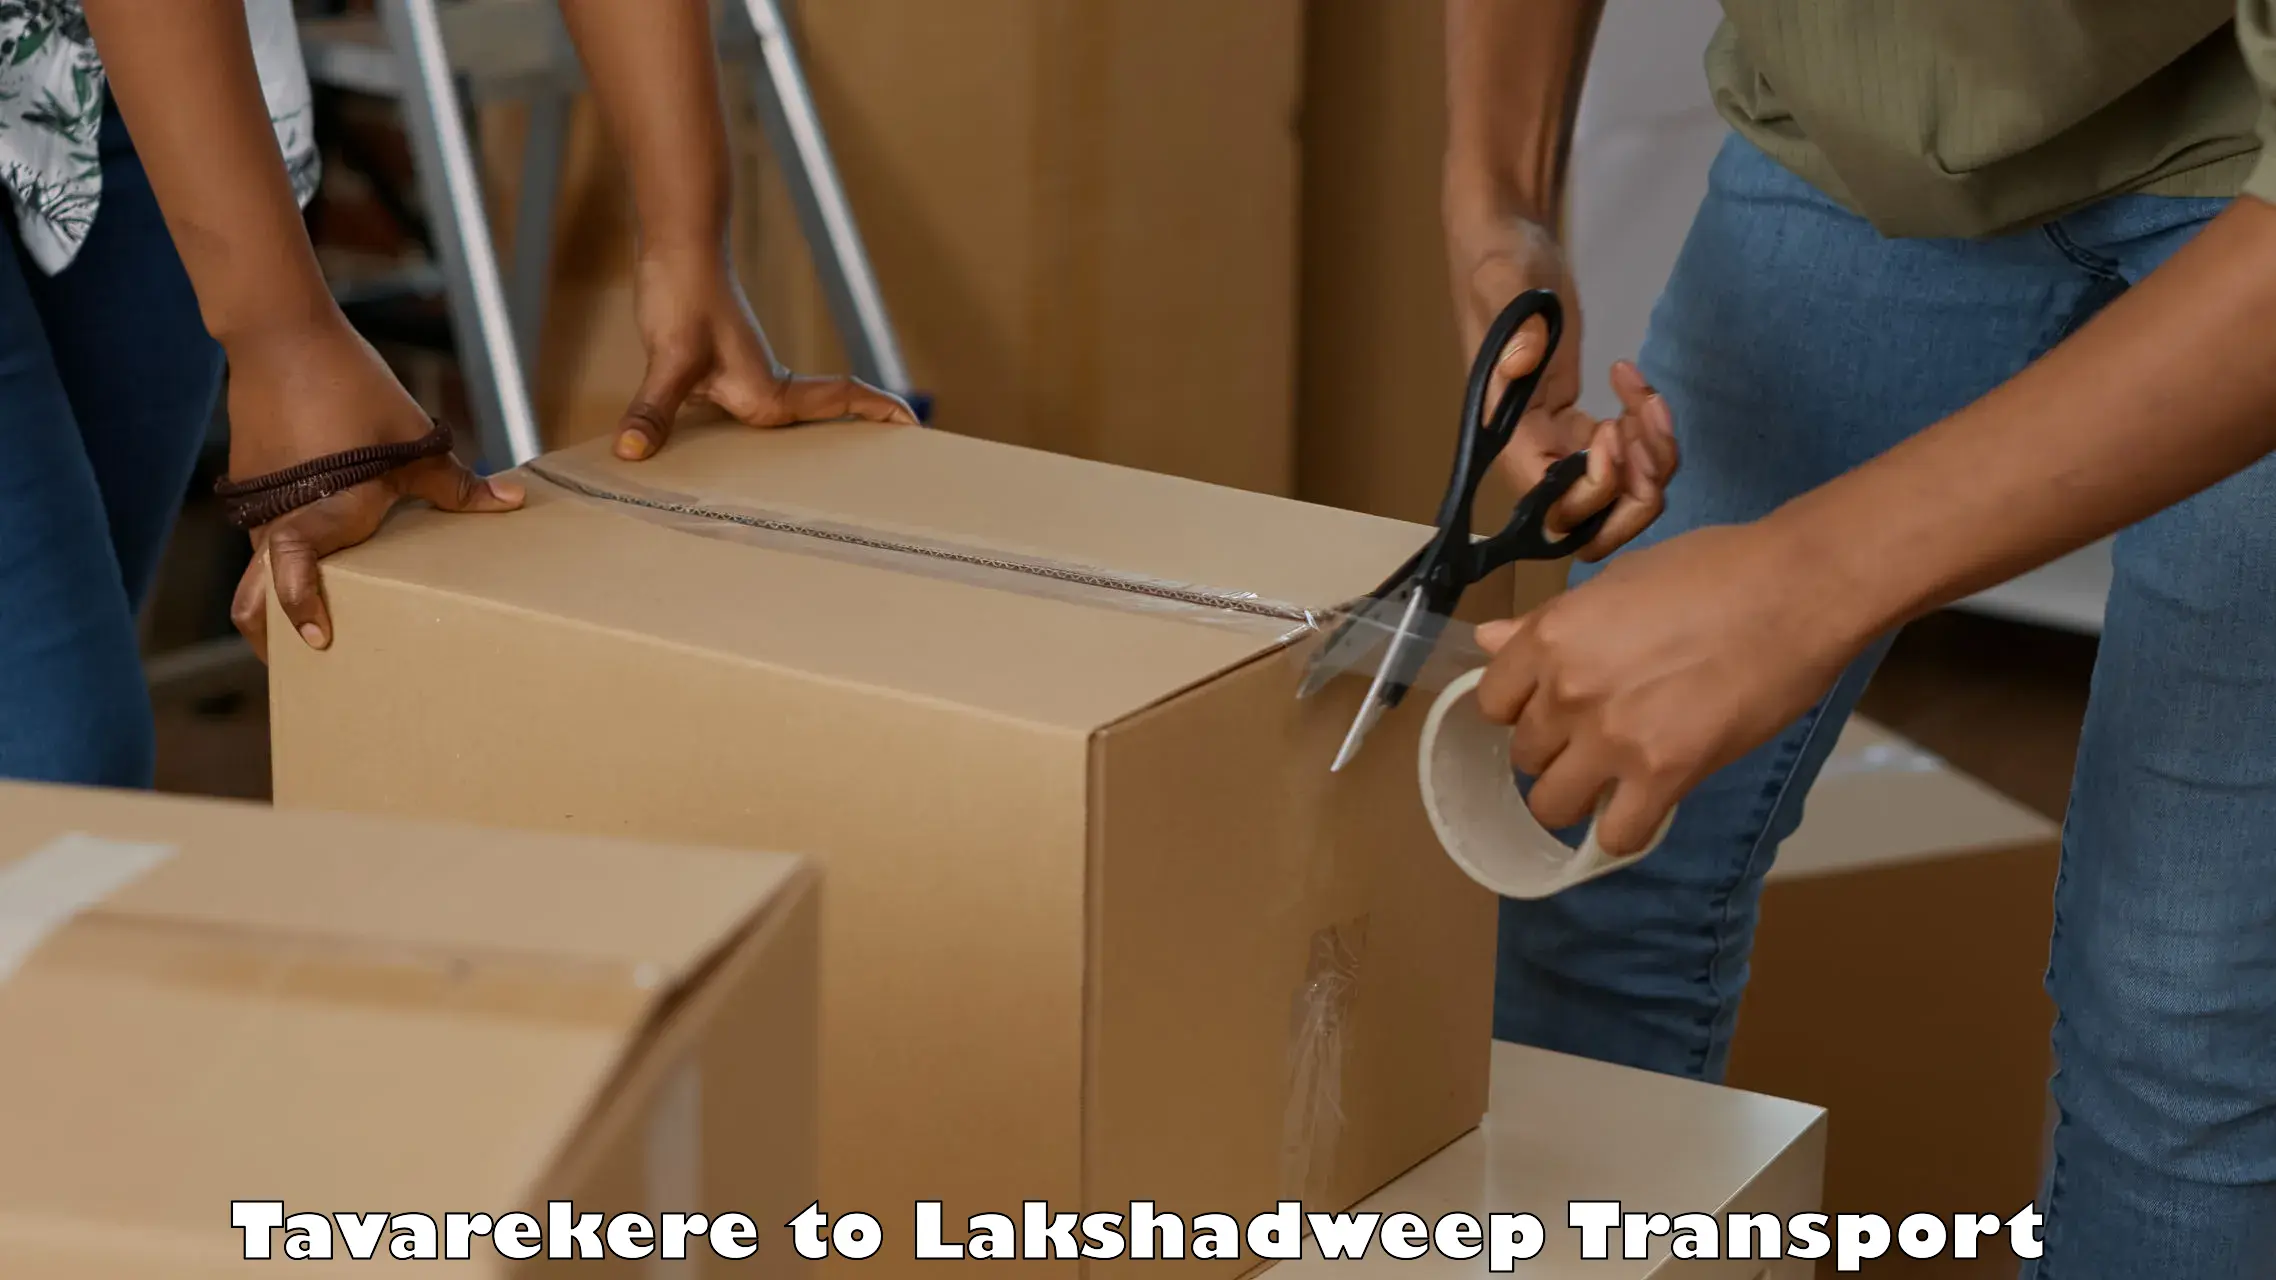 All India transport service Tavarekere to Lakshadweep